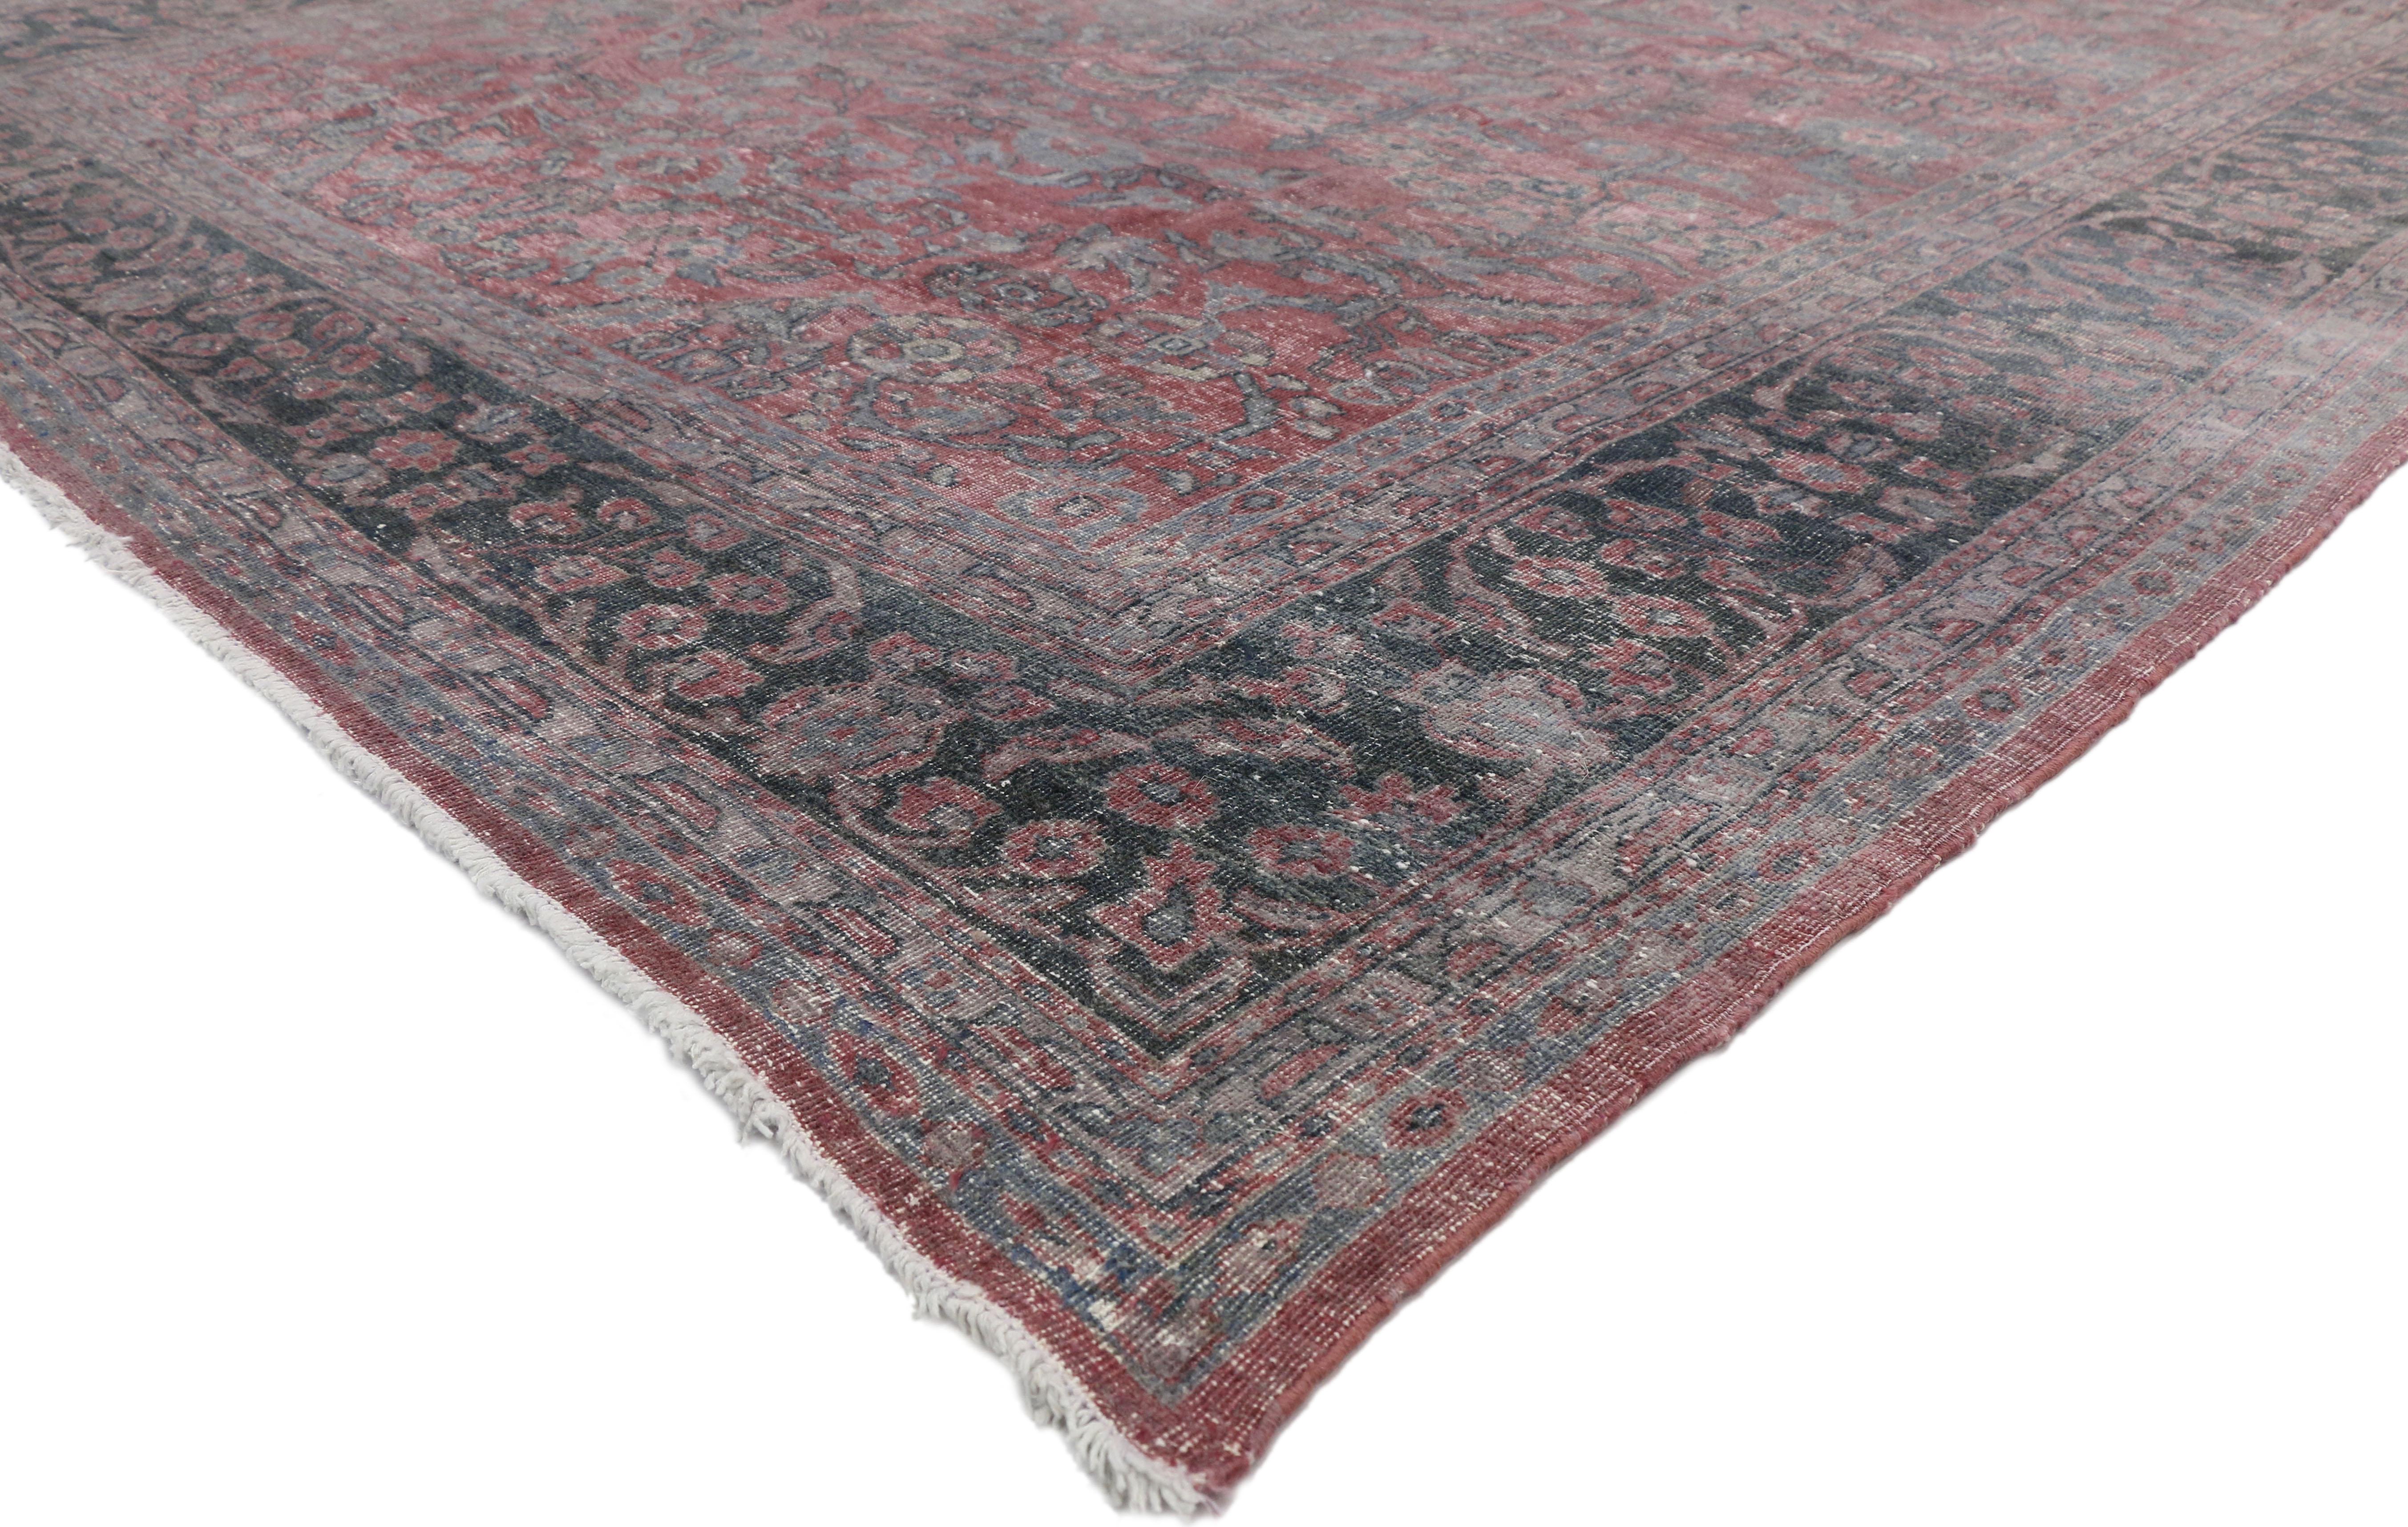 72868 Tapis de zone Persan Tabriz ancien et usé, au style industriel féminin. Ce tapis Tabriz ancien, noué à la main, au style industriel féminin, présente un médaillon central entouré d'un motif floral sur un fond de couleur marsala. Il est entouré